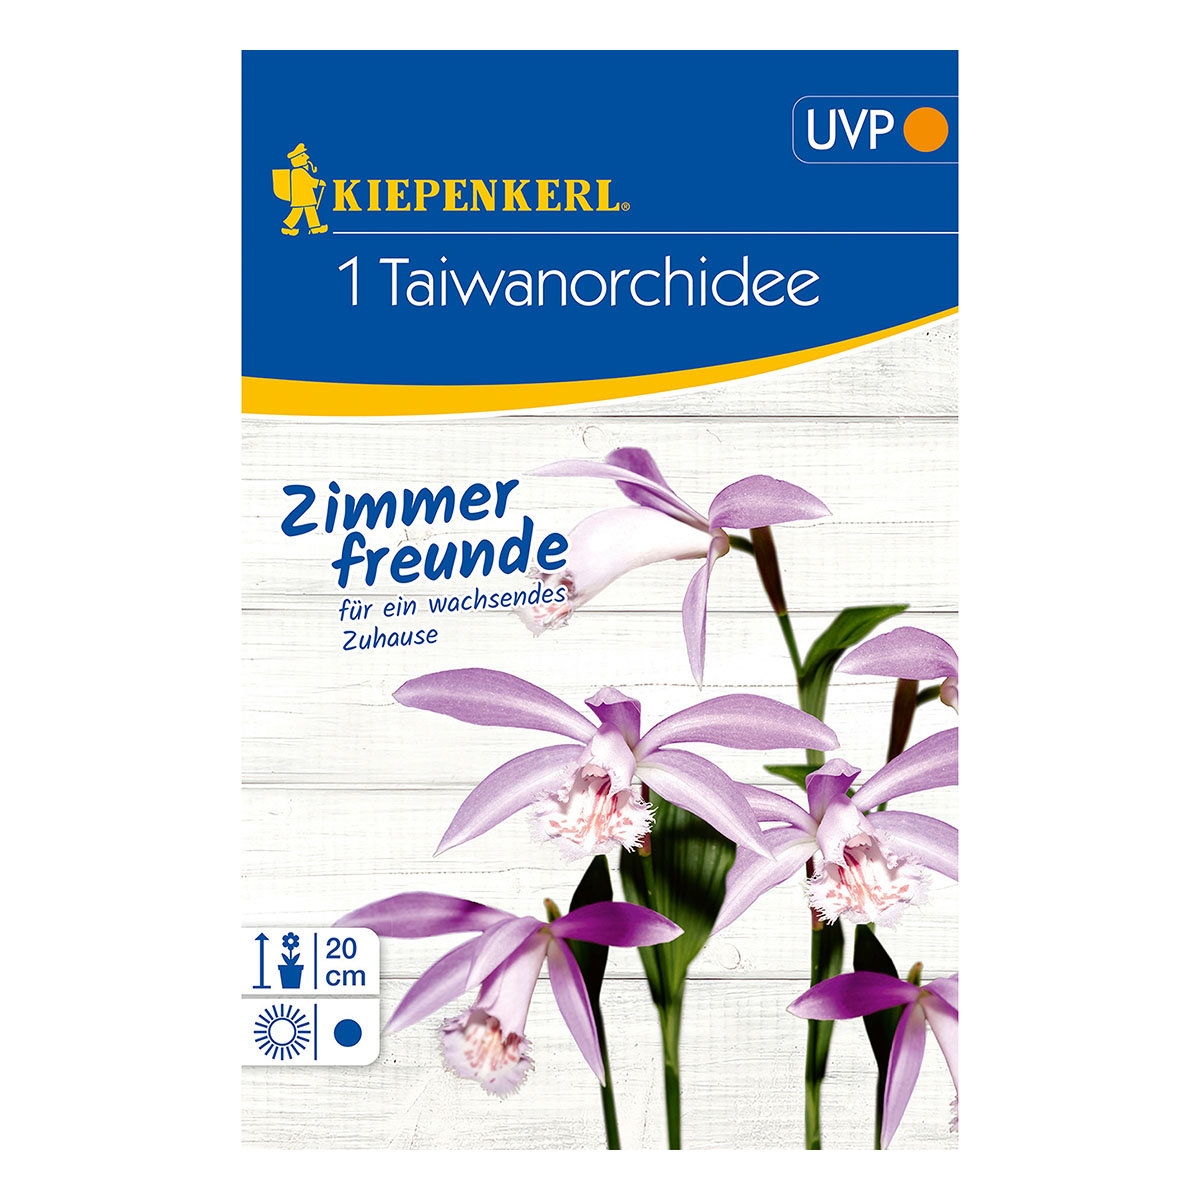 Taiwan-Orchidee
| #2